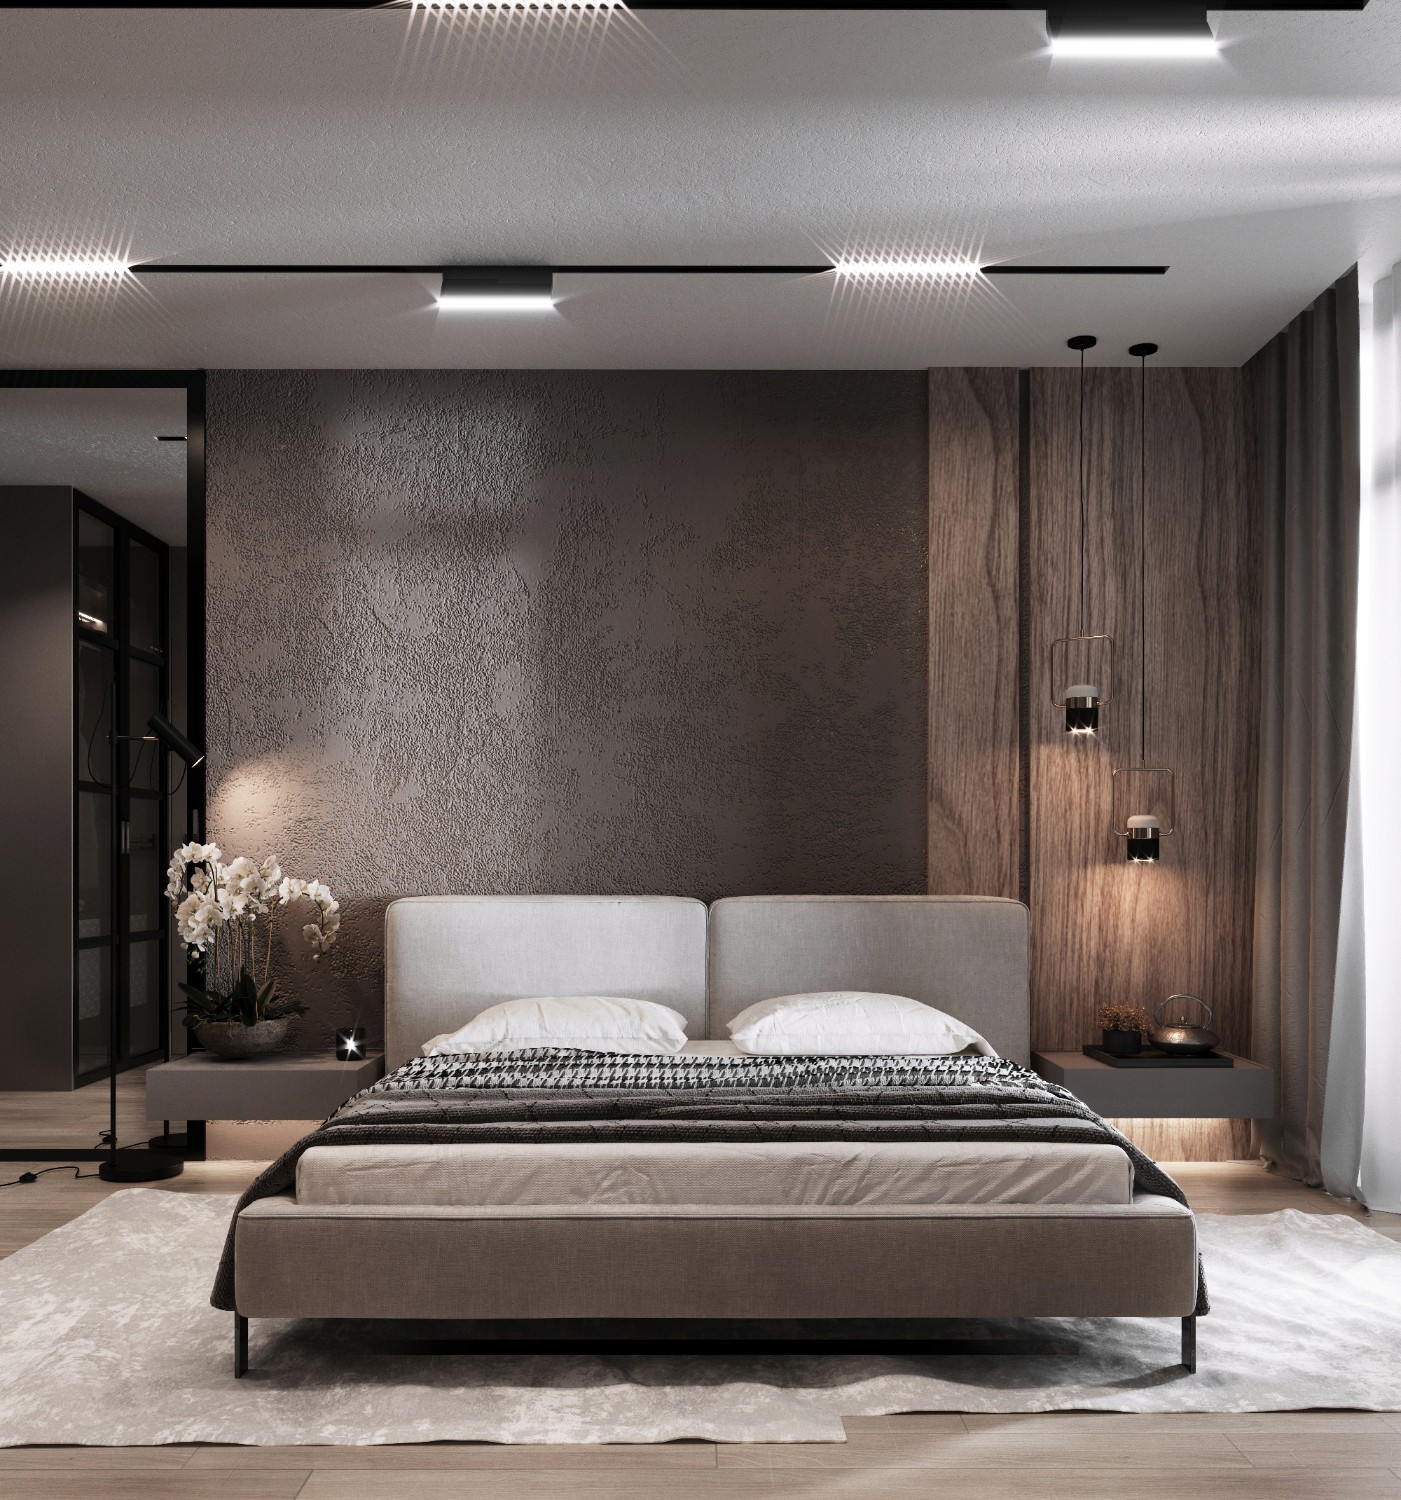 Волнующая атмосфера в спальне владельцев квартиры создана с помощью комбинаций разных материалов – фактурной штукатурки, деревянных панелей, бархатных тканей, и, конечно, света.